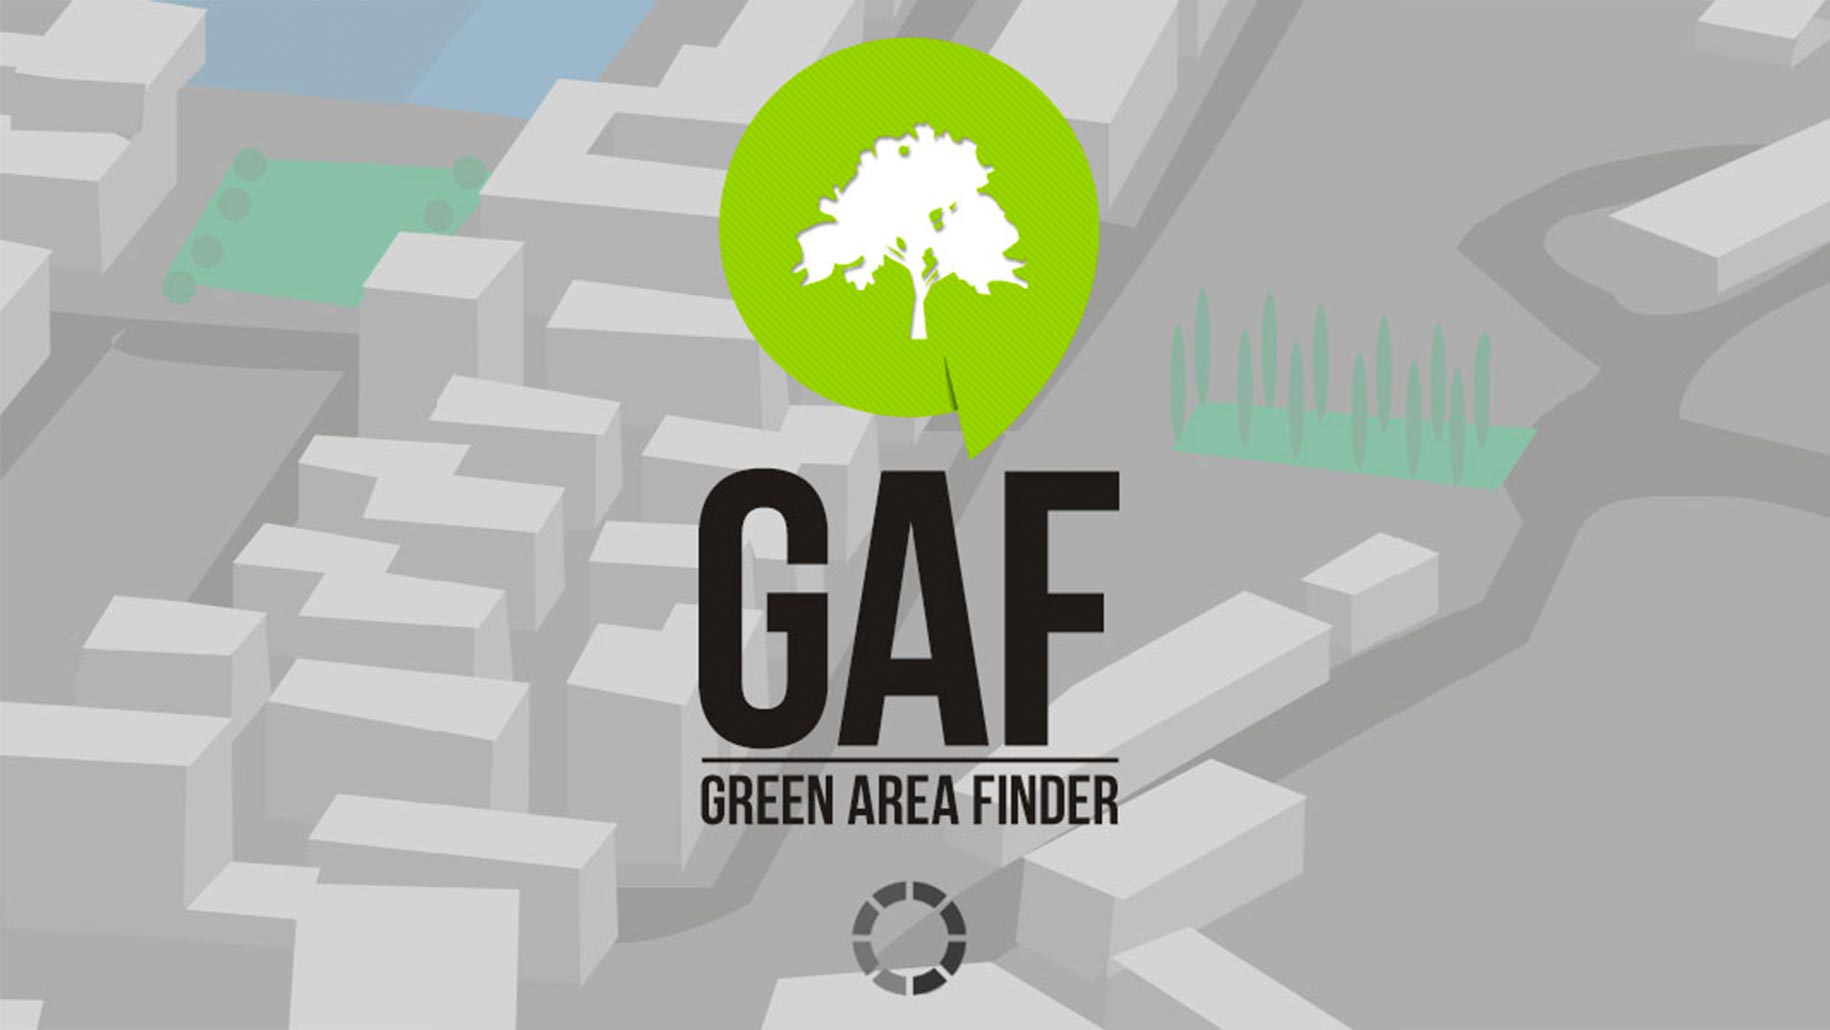 fabian-wolfram-gaf-green-area-finder-slide-001